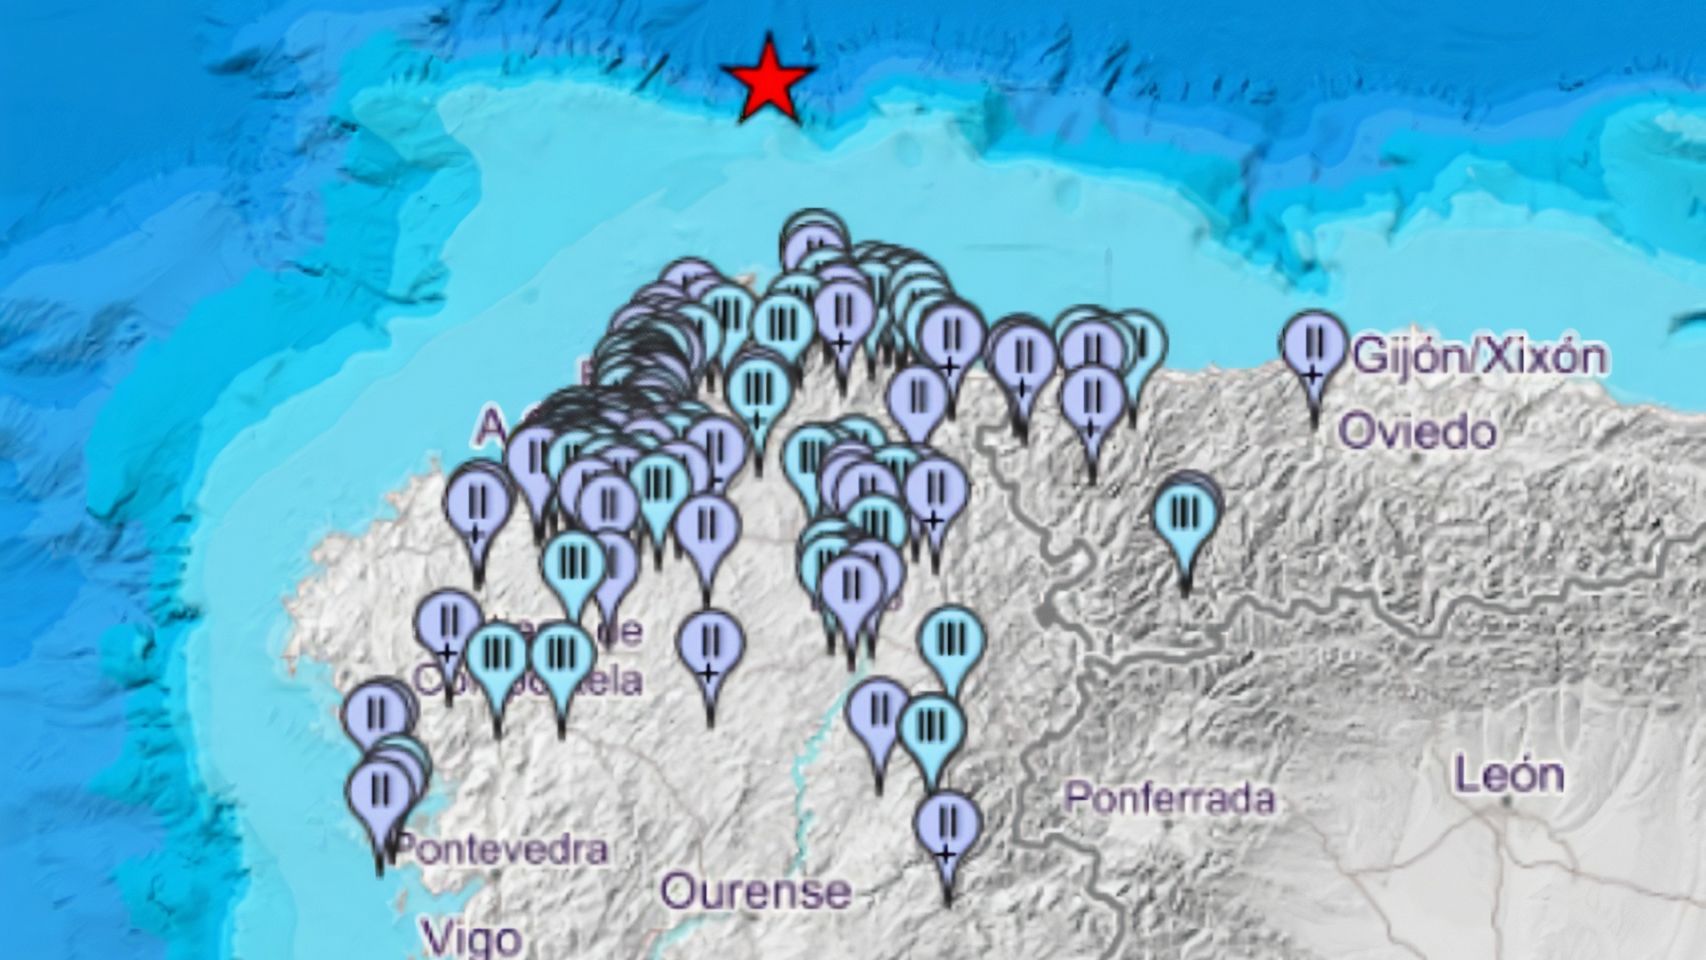 Varios lugares desde los que los gallegos reportaron haber sentido el terremoto del 29 de octubre.